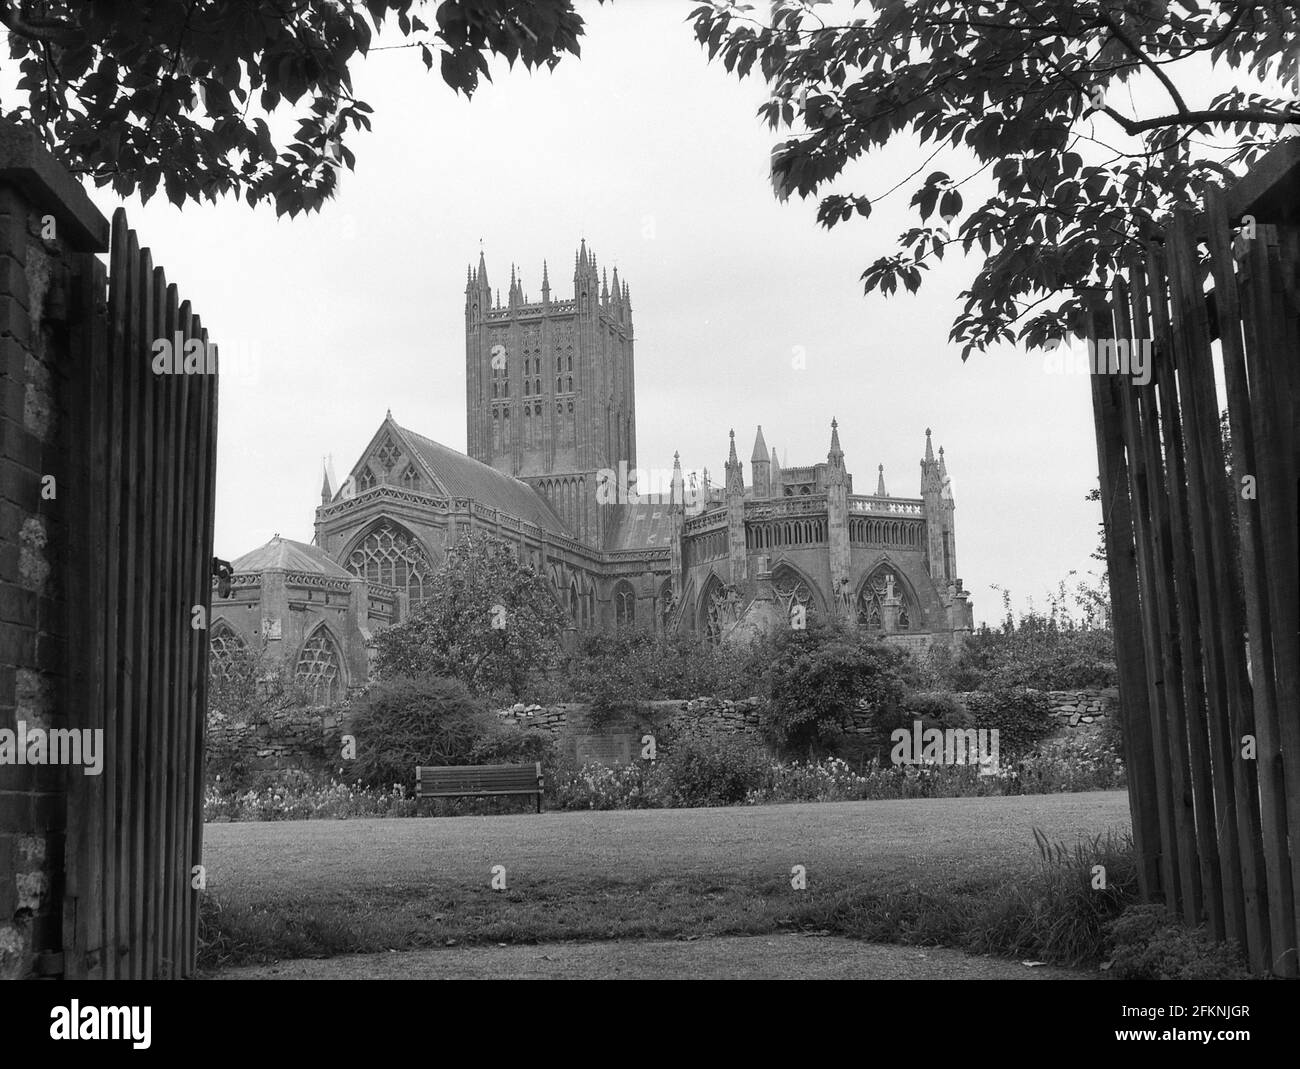 Années 1950, historique, extérieur de la cathédrale de Wells, Angleterre, Royaume-Uni, une cathédrale anglian à Wells, Somerset construit dans le style architectural gothique. Banque D'Images